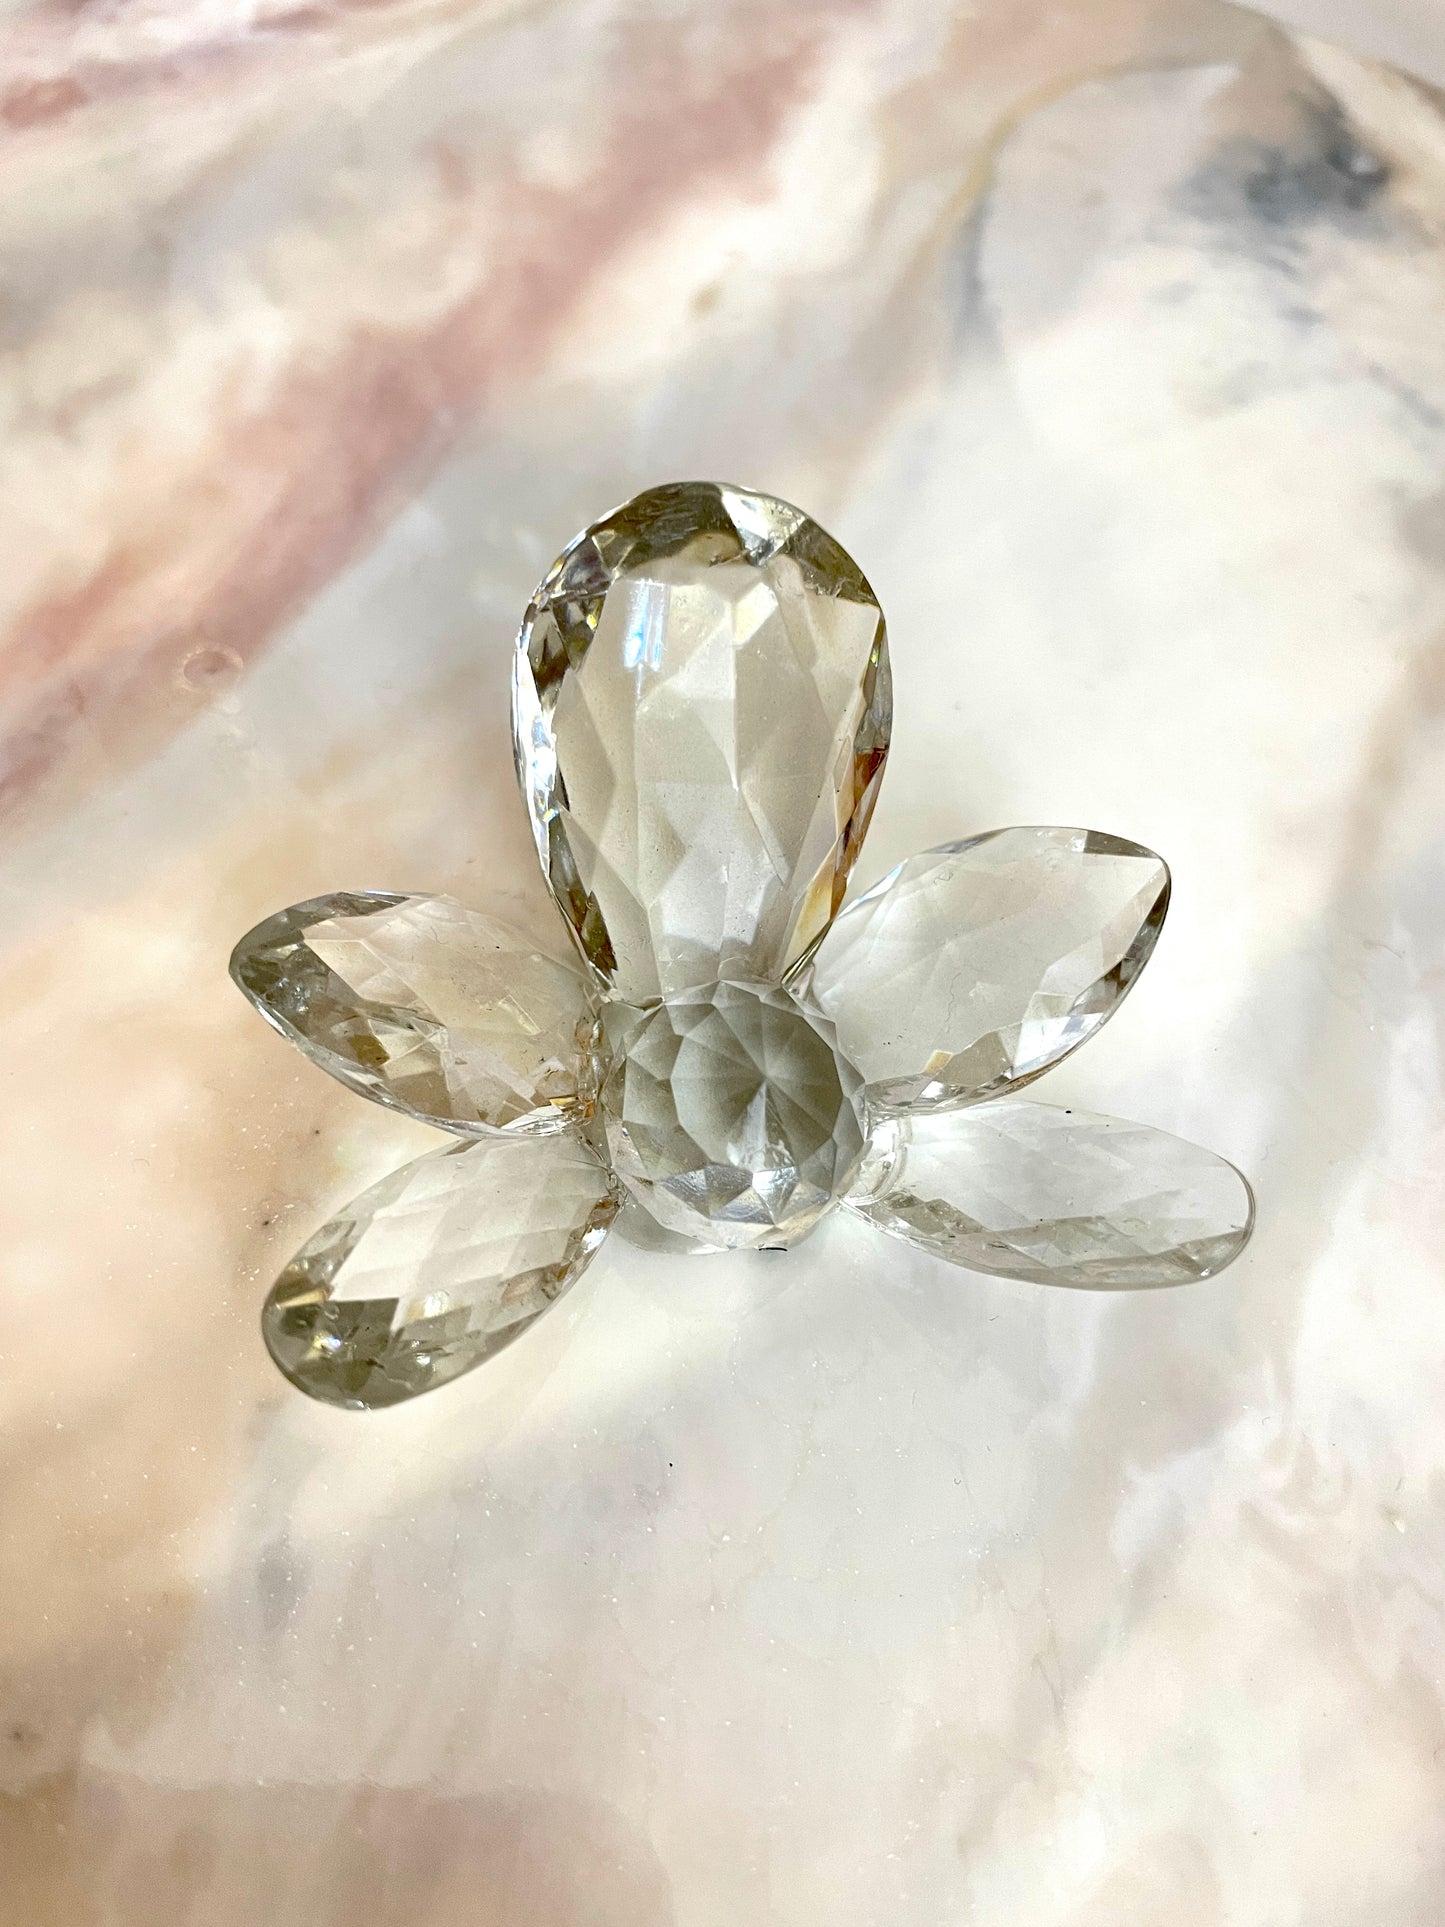 Erlesene Schönheit: Werten Sie Ihre Kunstharzkunst mit unserer luxuriösen Kristallorchideen-Silikonform auf